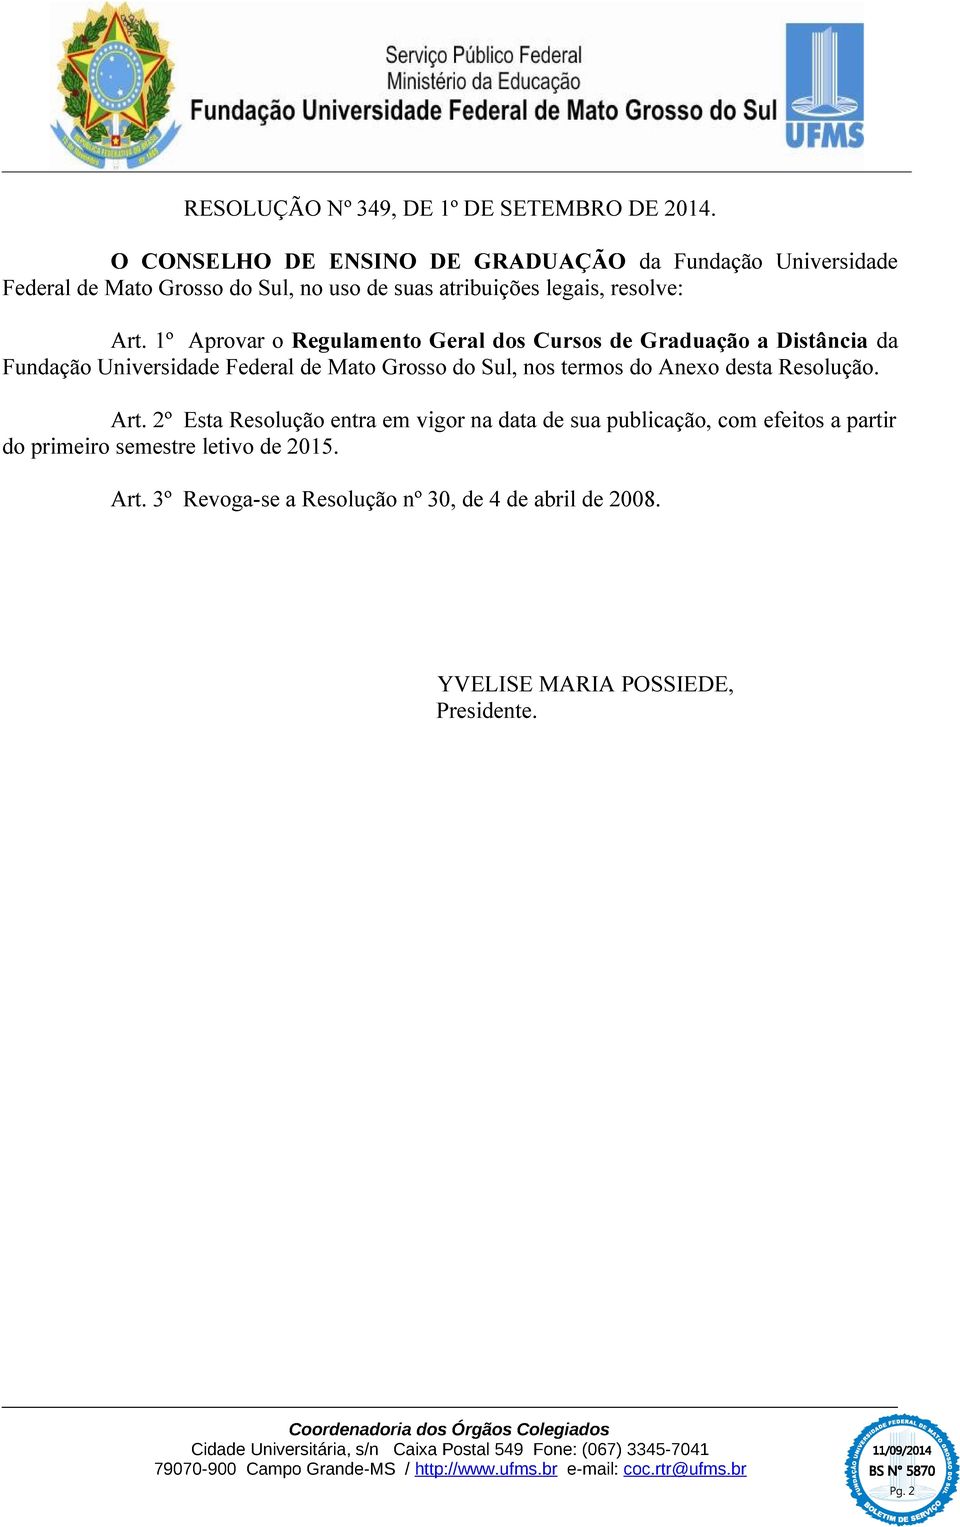 1º Aprovar o Regulamento Geral dos Cursos de Graduação a Distância da Fundação Universidade Federal de Mato Grosso do Sul, nos termos do